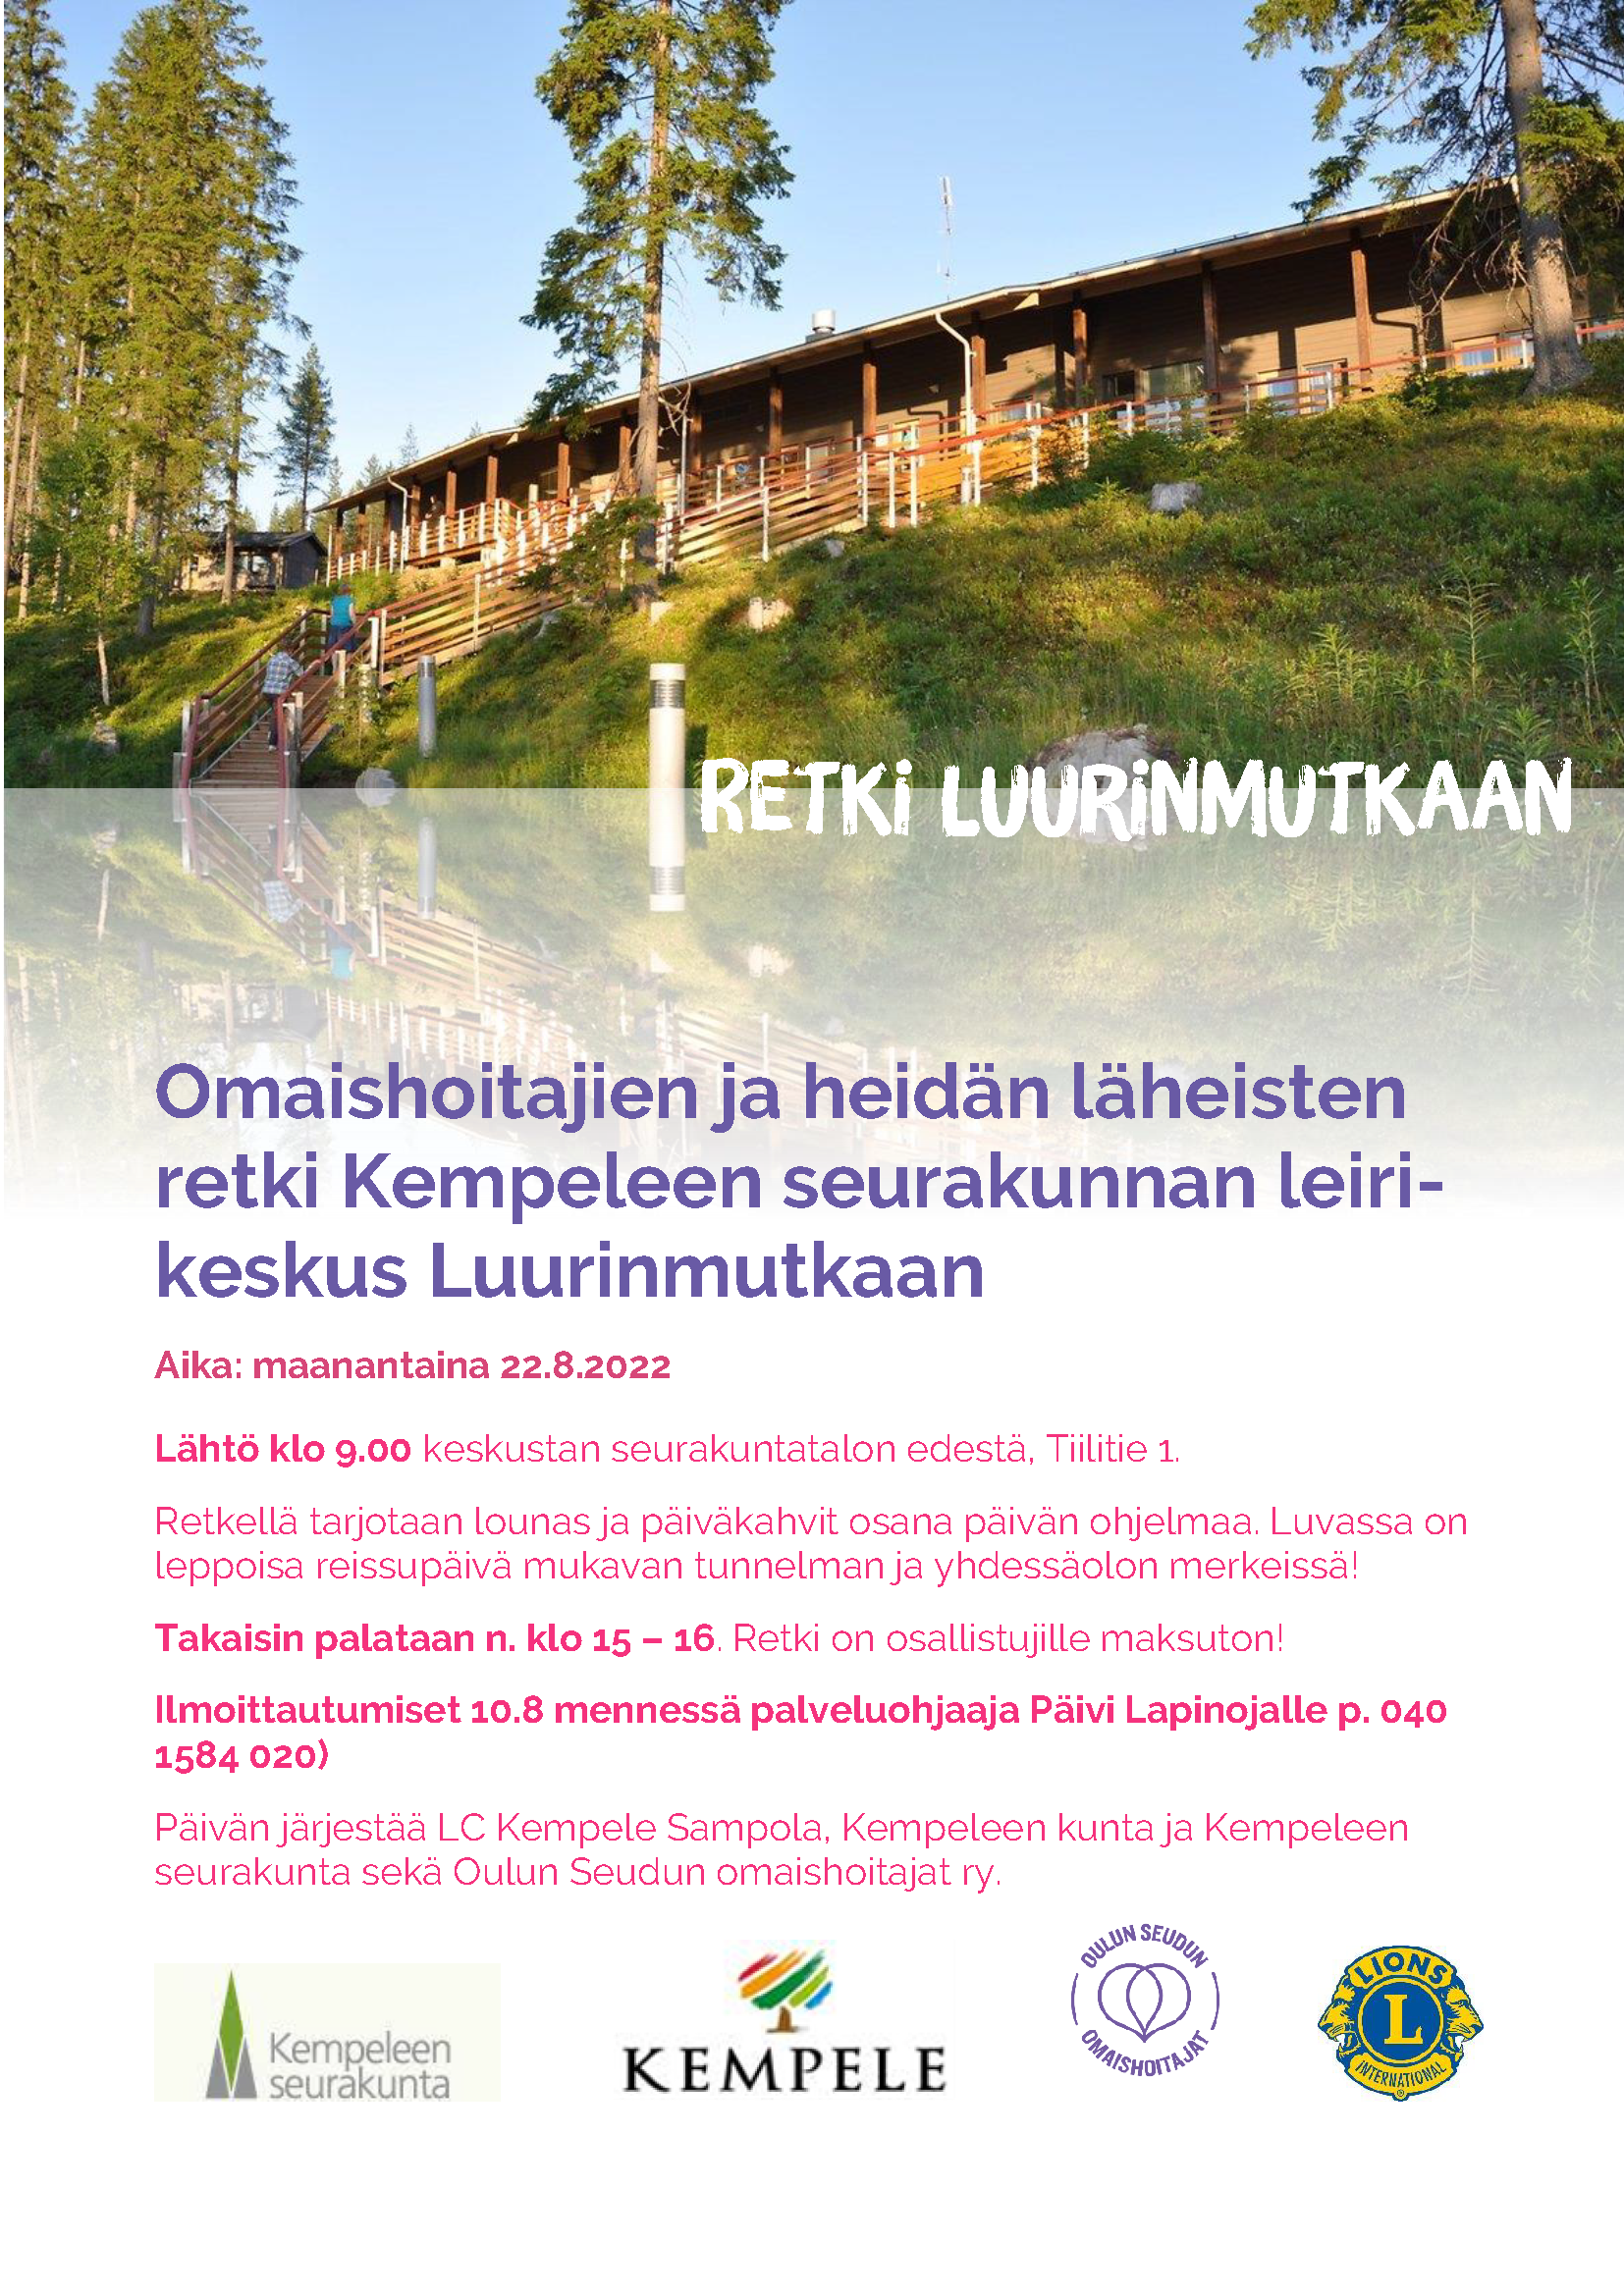 Omaishoitajien ja läheisten retki seurakunnan leirikeskus Luurinmutkaan   - Kempeleen kunta